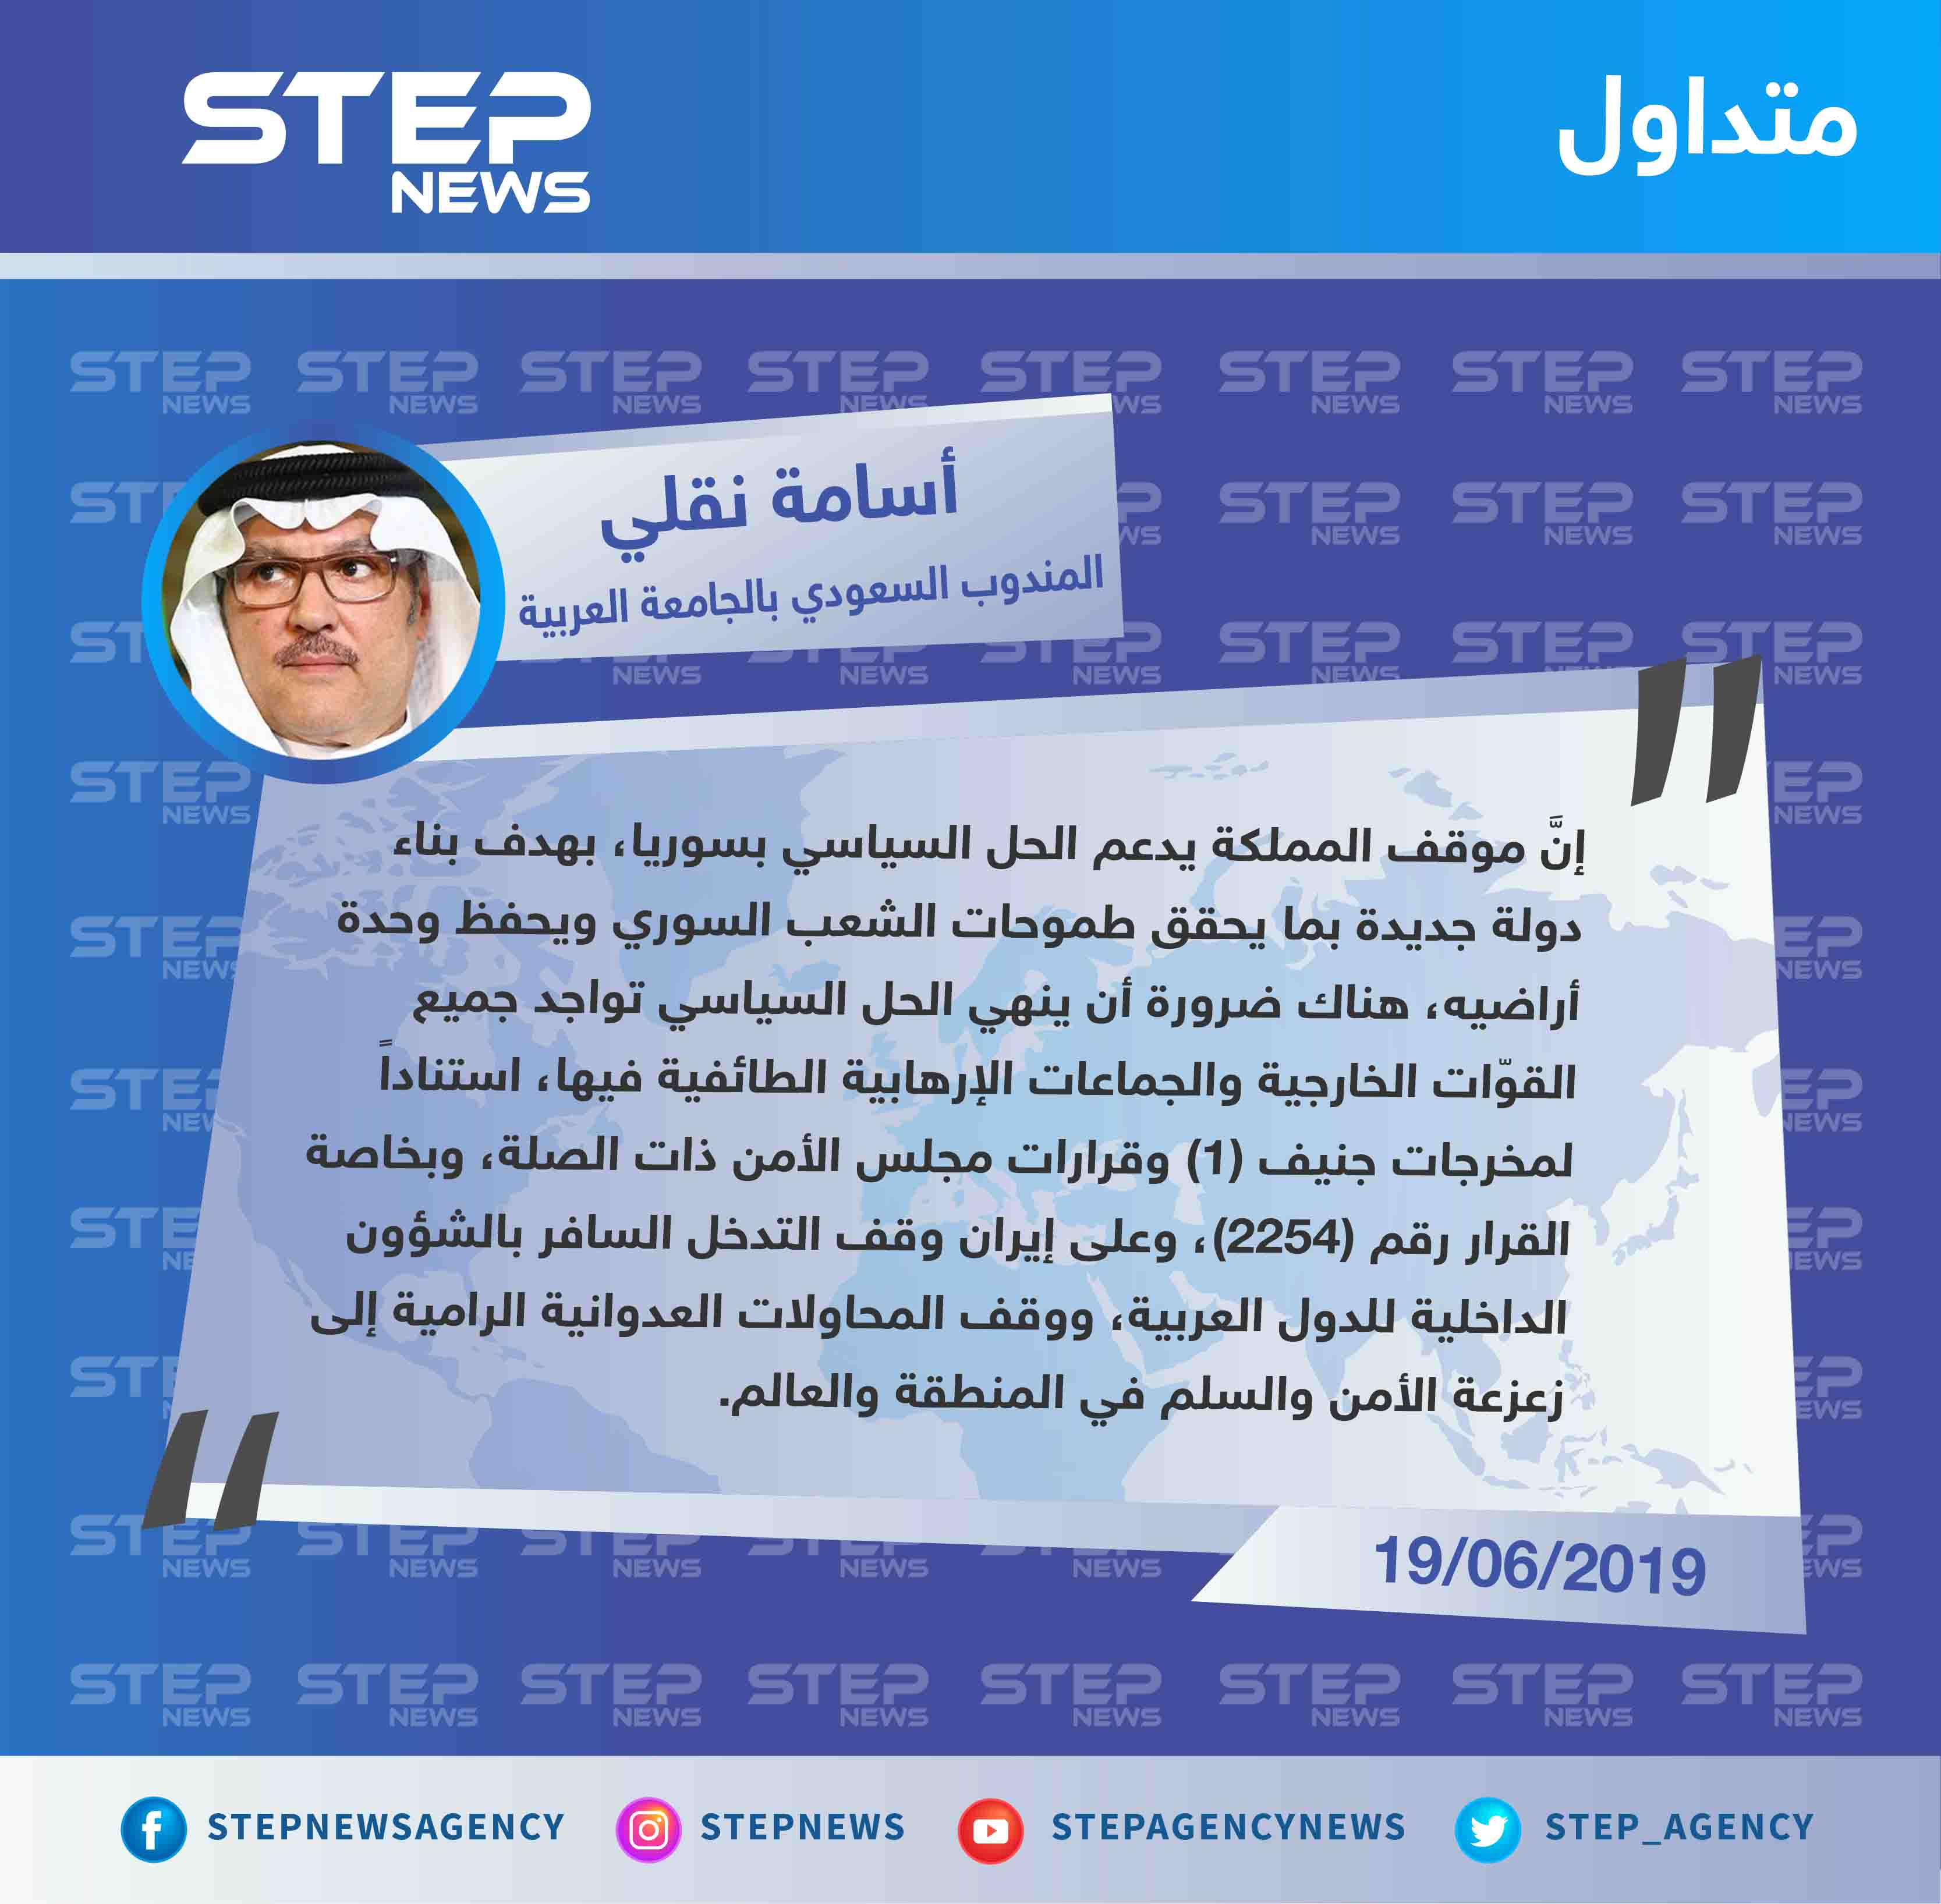 المندوب السعودي: "هناك ضرورة أن ينهي الحل السياسي في سوريا، تواجد جميع القوّات الخارجية والجماعات الإرهابية الطائفية فيها".